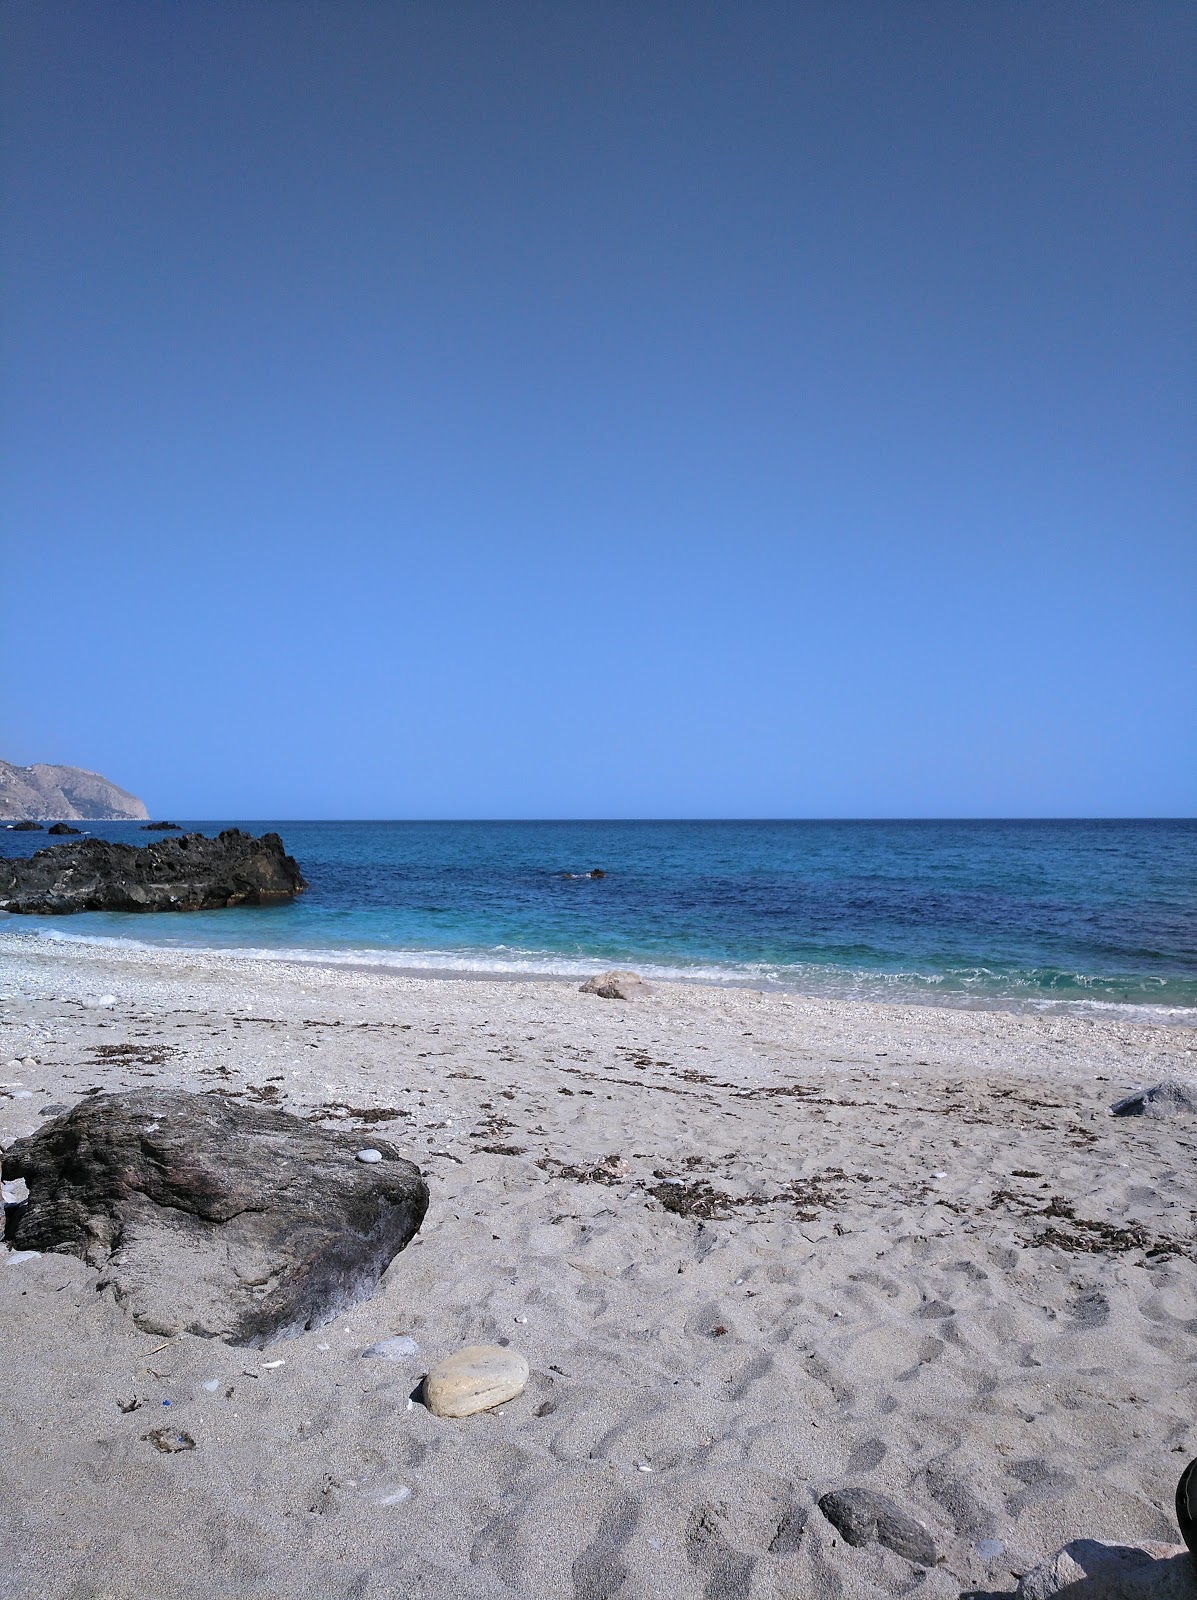 Caleta beach'in fotoğrafı turkuaz saf su yüzey ile